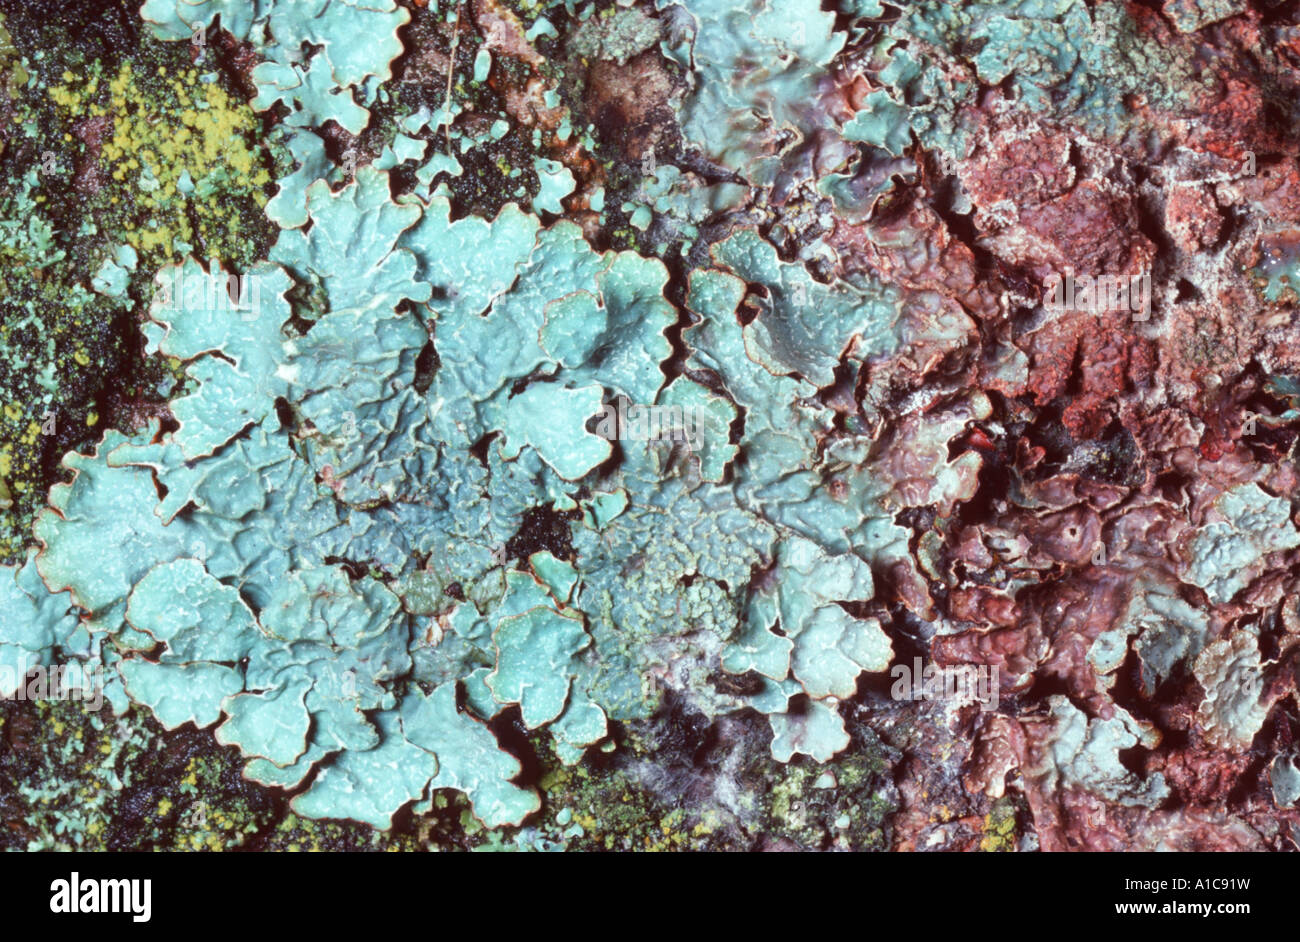 lichen (Parmelia cf. sulcata), Germany Stock Photo